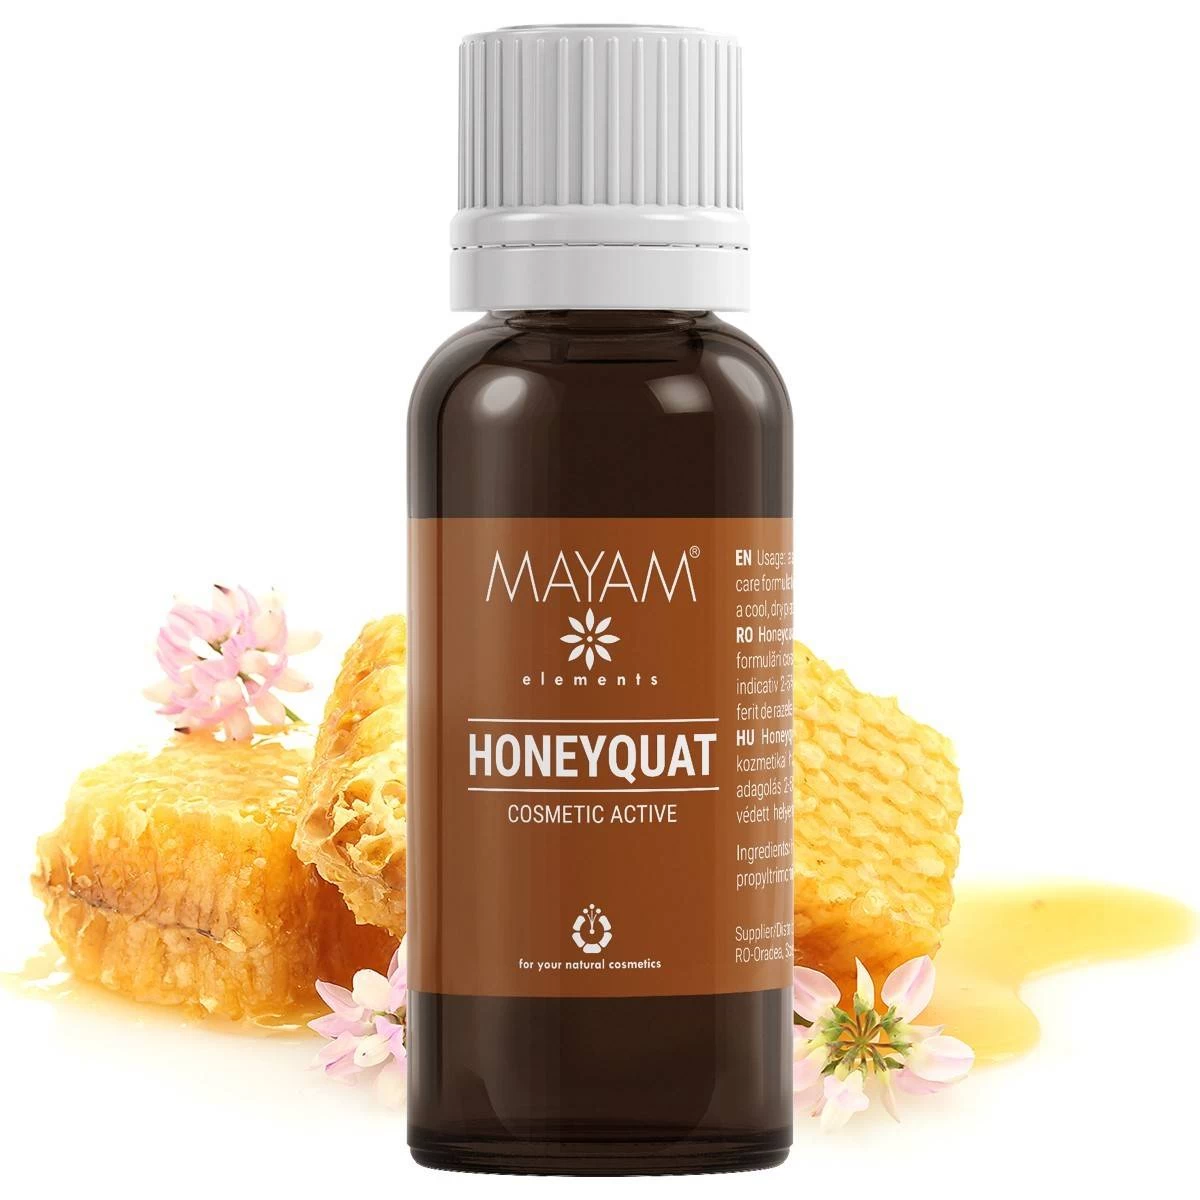 Honeyquat, 280g - Mayam